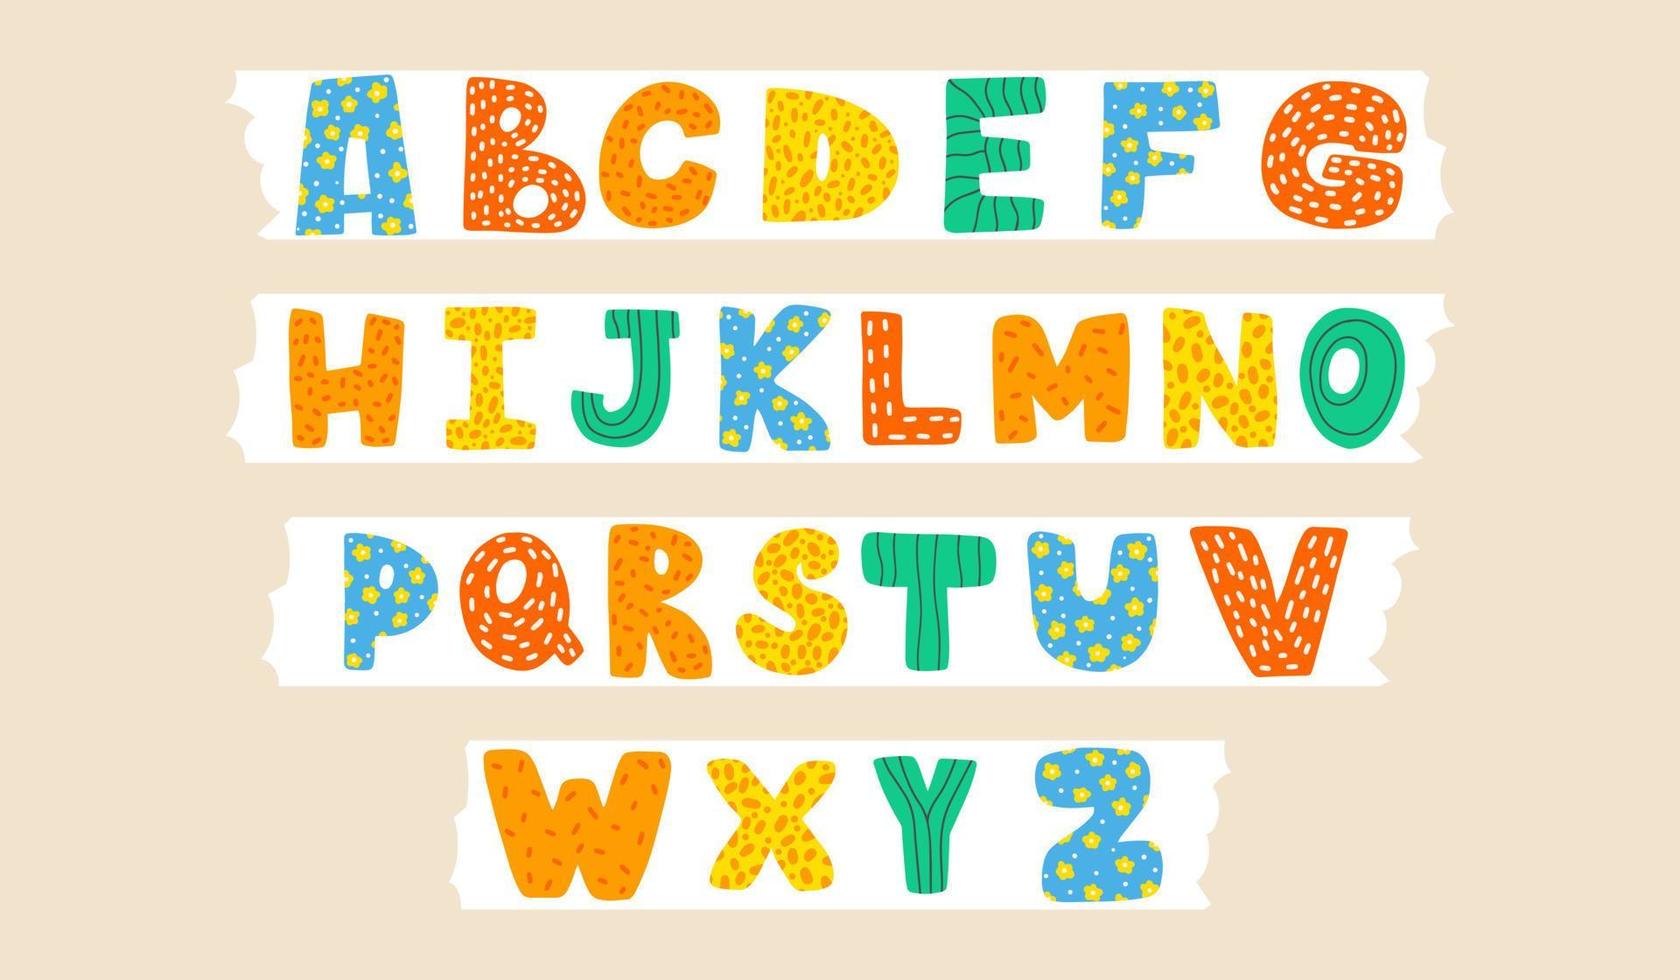 carino infantile latino font o freddo inglese alfabeto decorato con puntini e scarabocchi. mano disegnato vettore illustrazione.